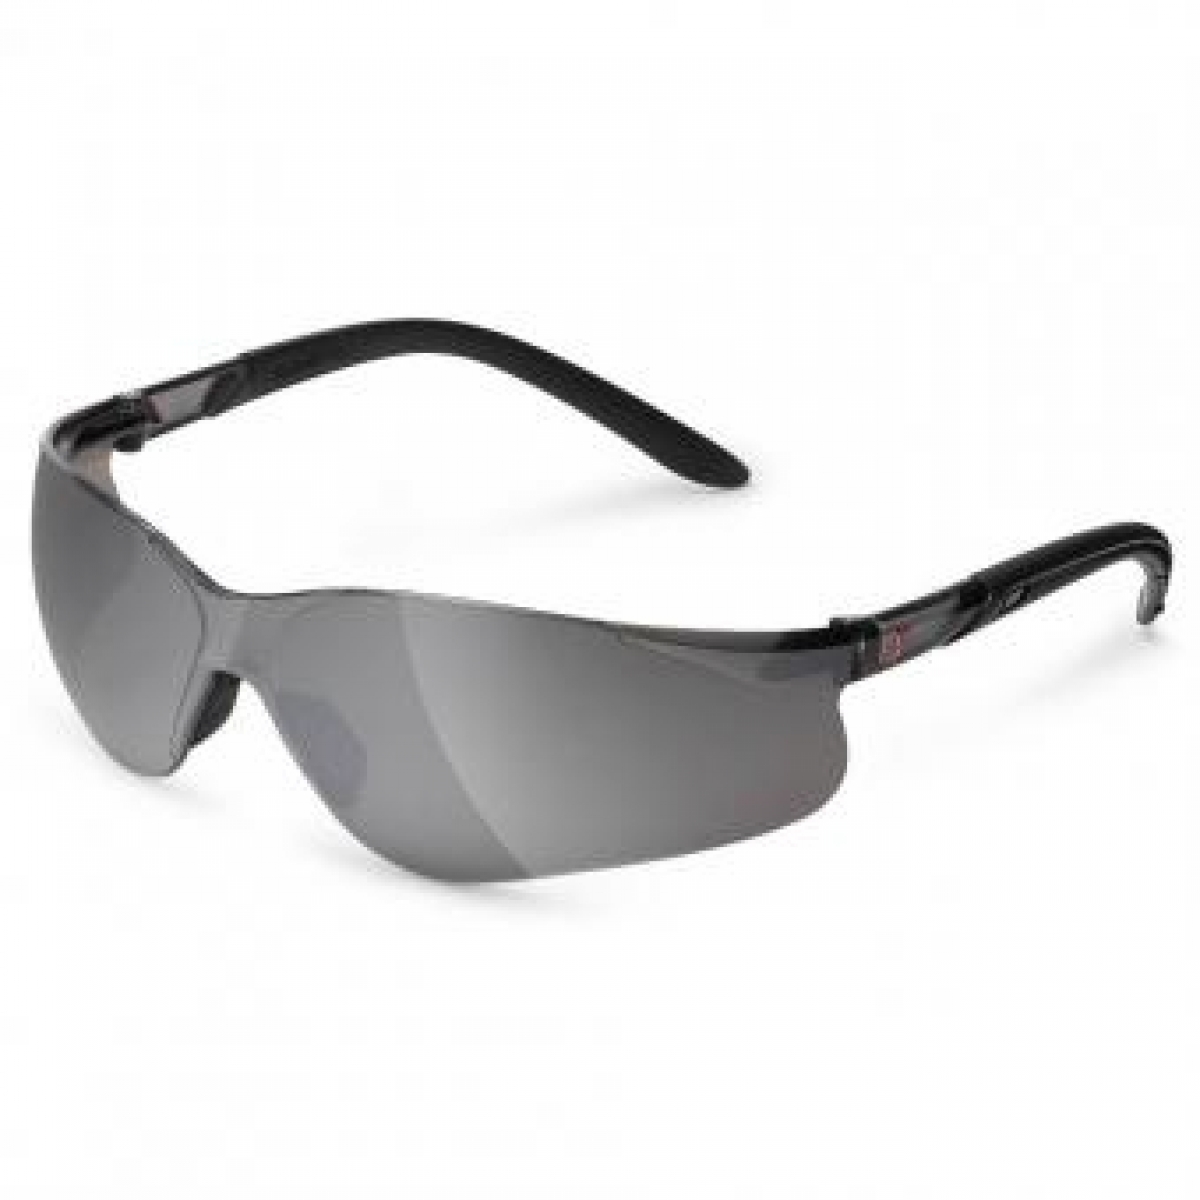 NITRAS VISION PROTECT, Schutzbrille, Tragkrper schwarz, Sichtscheiben sehr dunkel, silber verspiegelt, EN 166